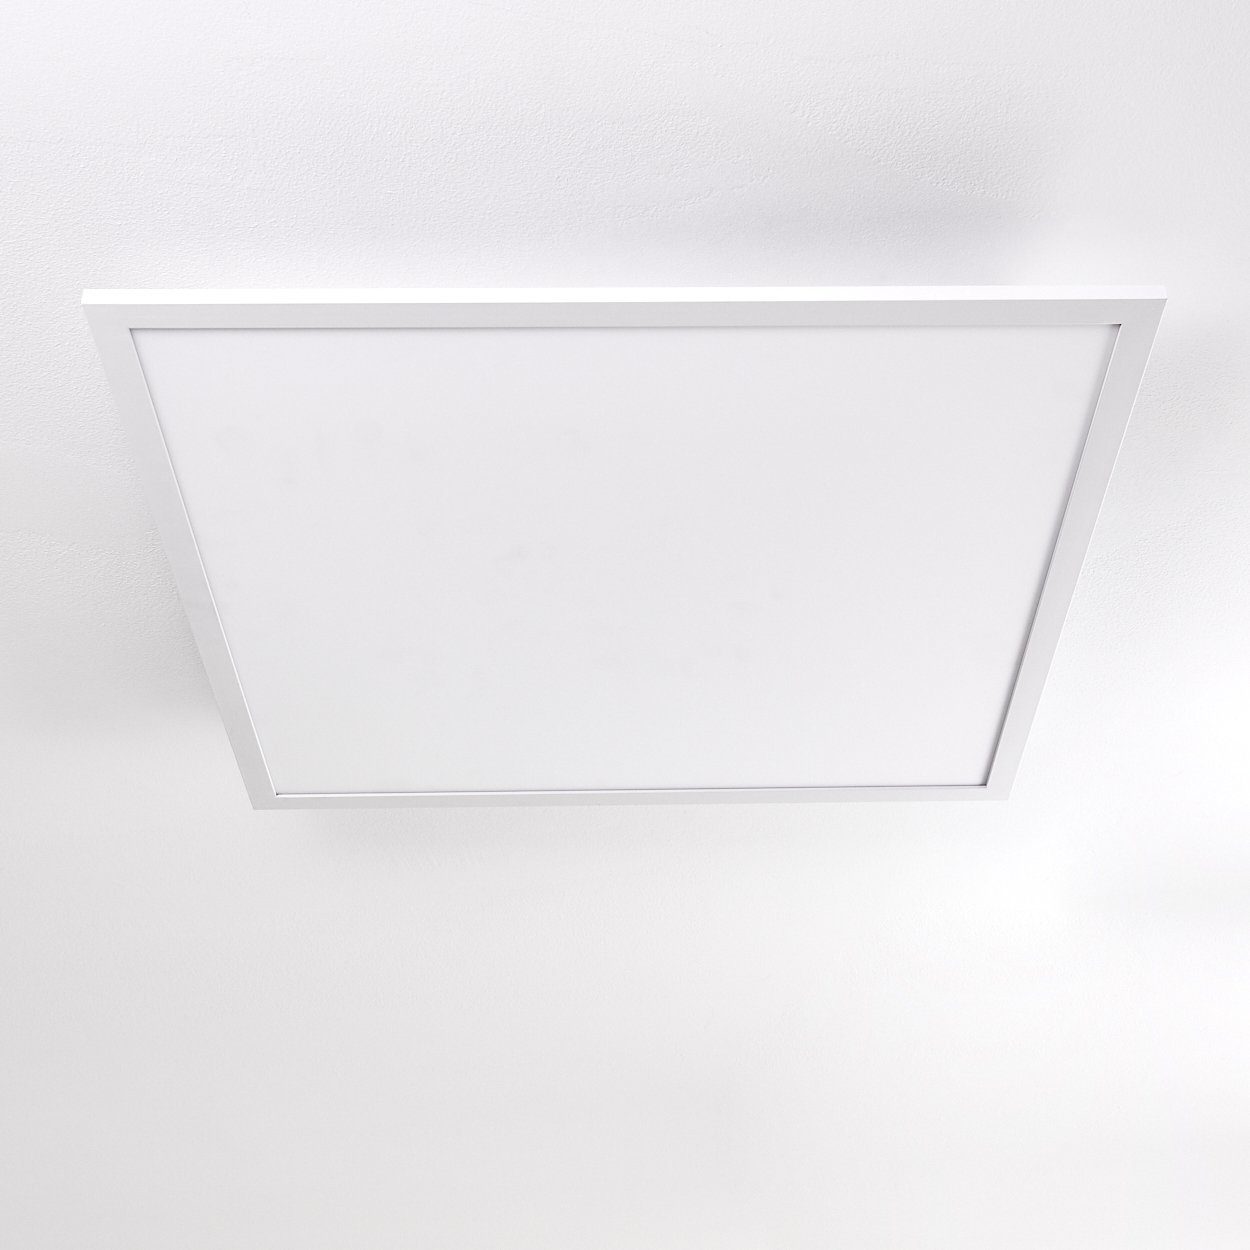 Panel modernes Lumen, 3000 Design 4800 aus Watt, Weiß, Kelvin, 40 in LED Deckenlampe Panel flachem eckige »Vacil« hofstein Aluminiumin Deckenpanel